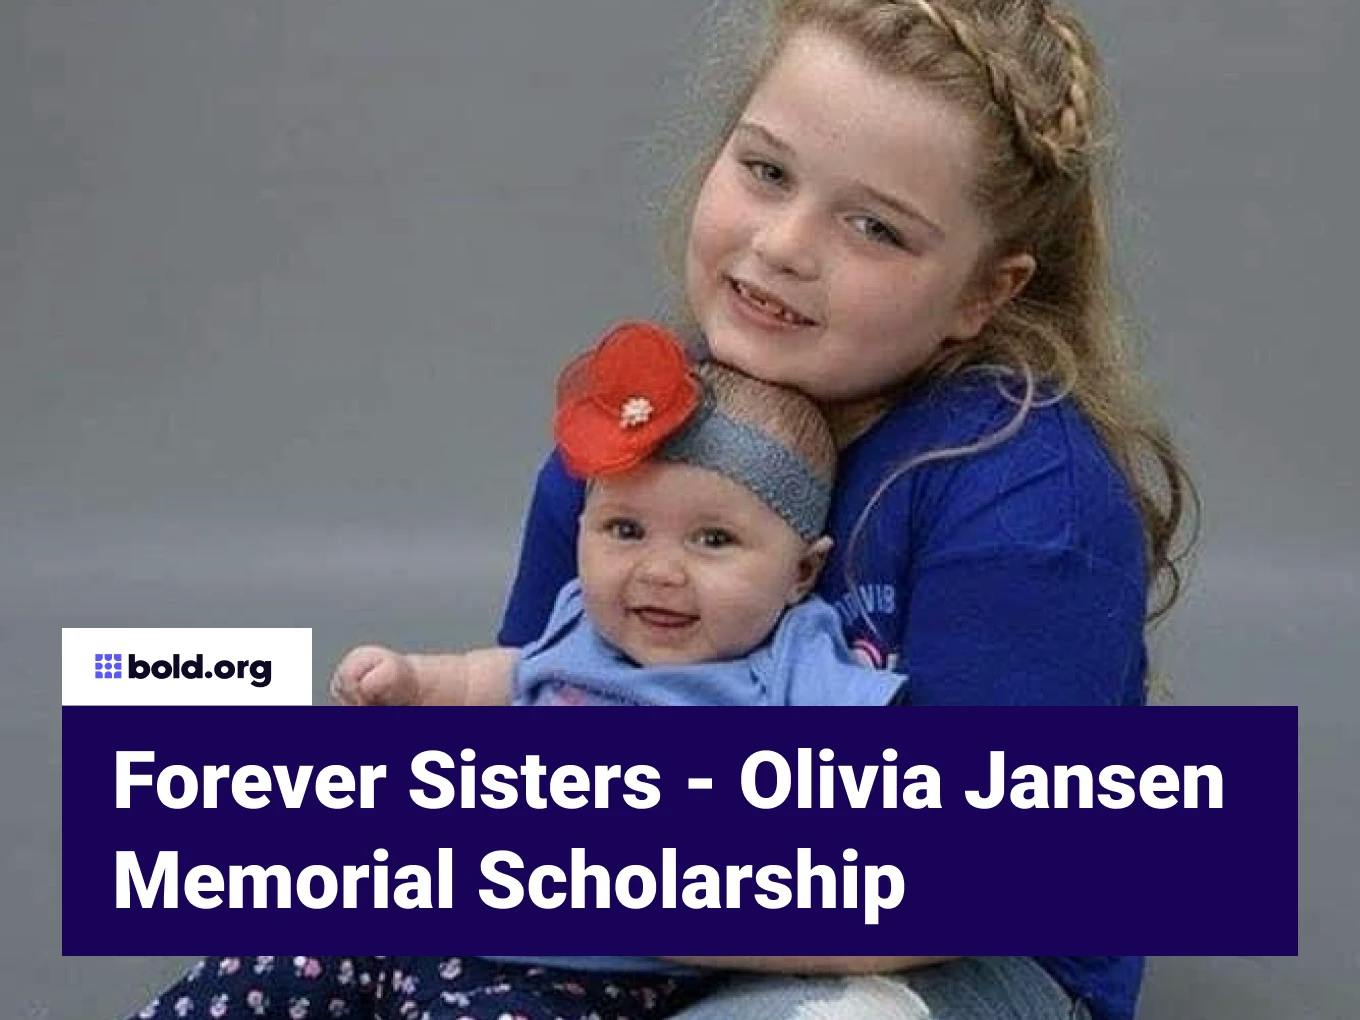 Forever Sisters - Olivia Jansen Memorial Scholarship